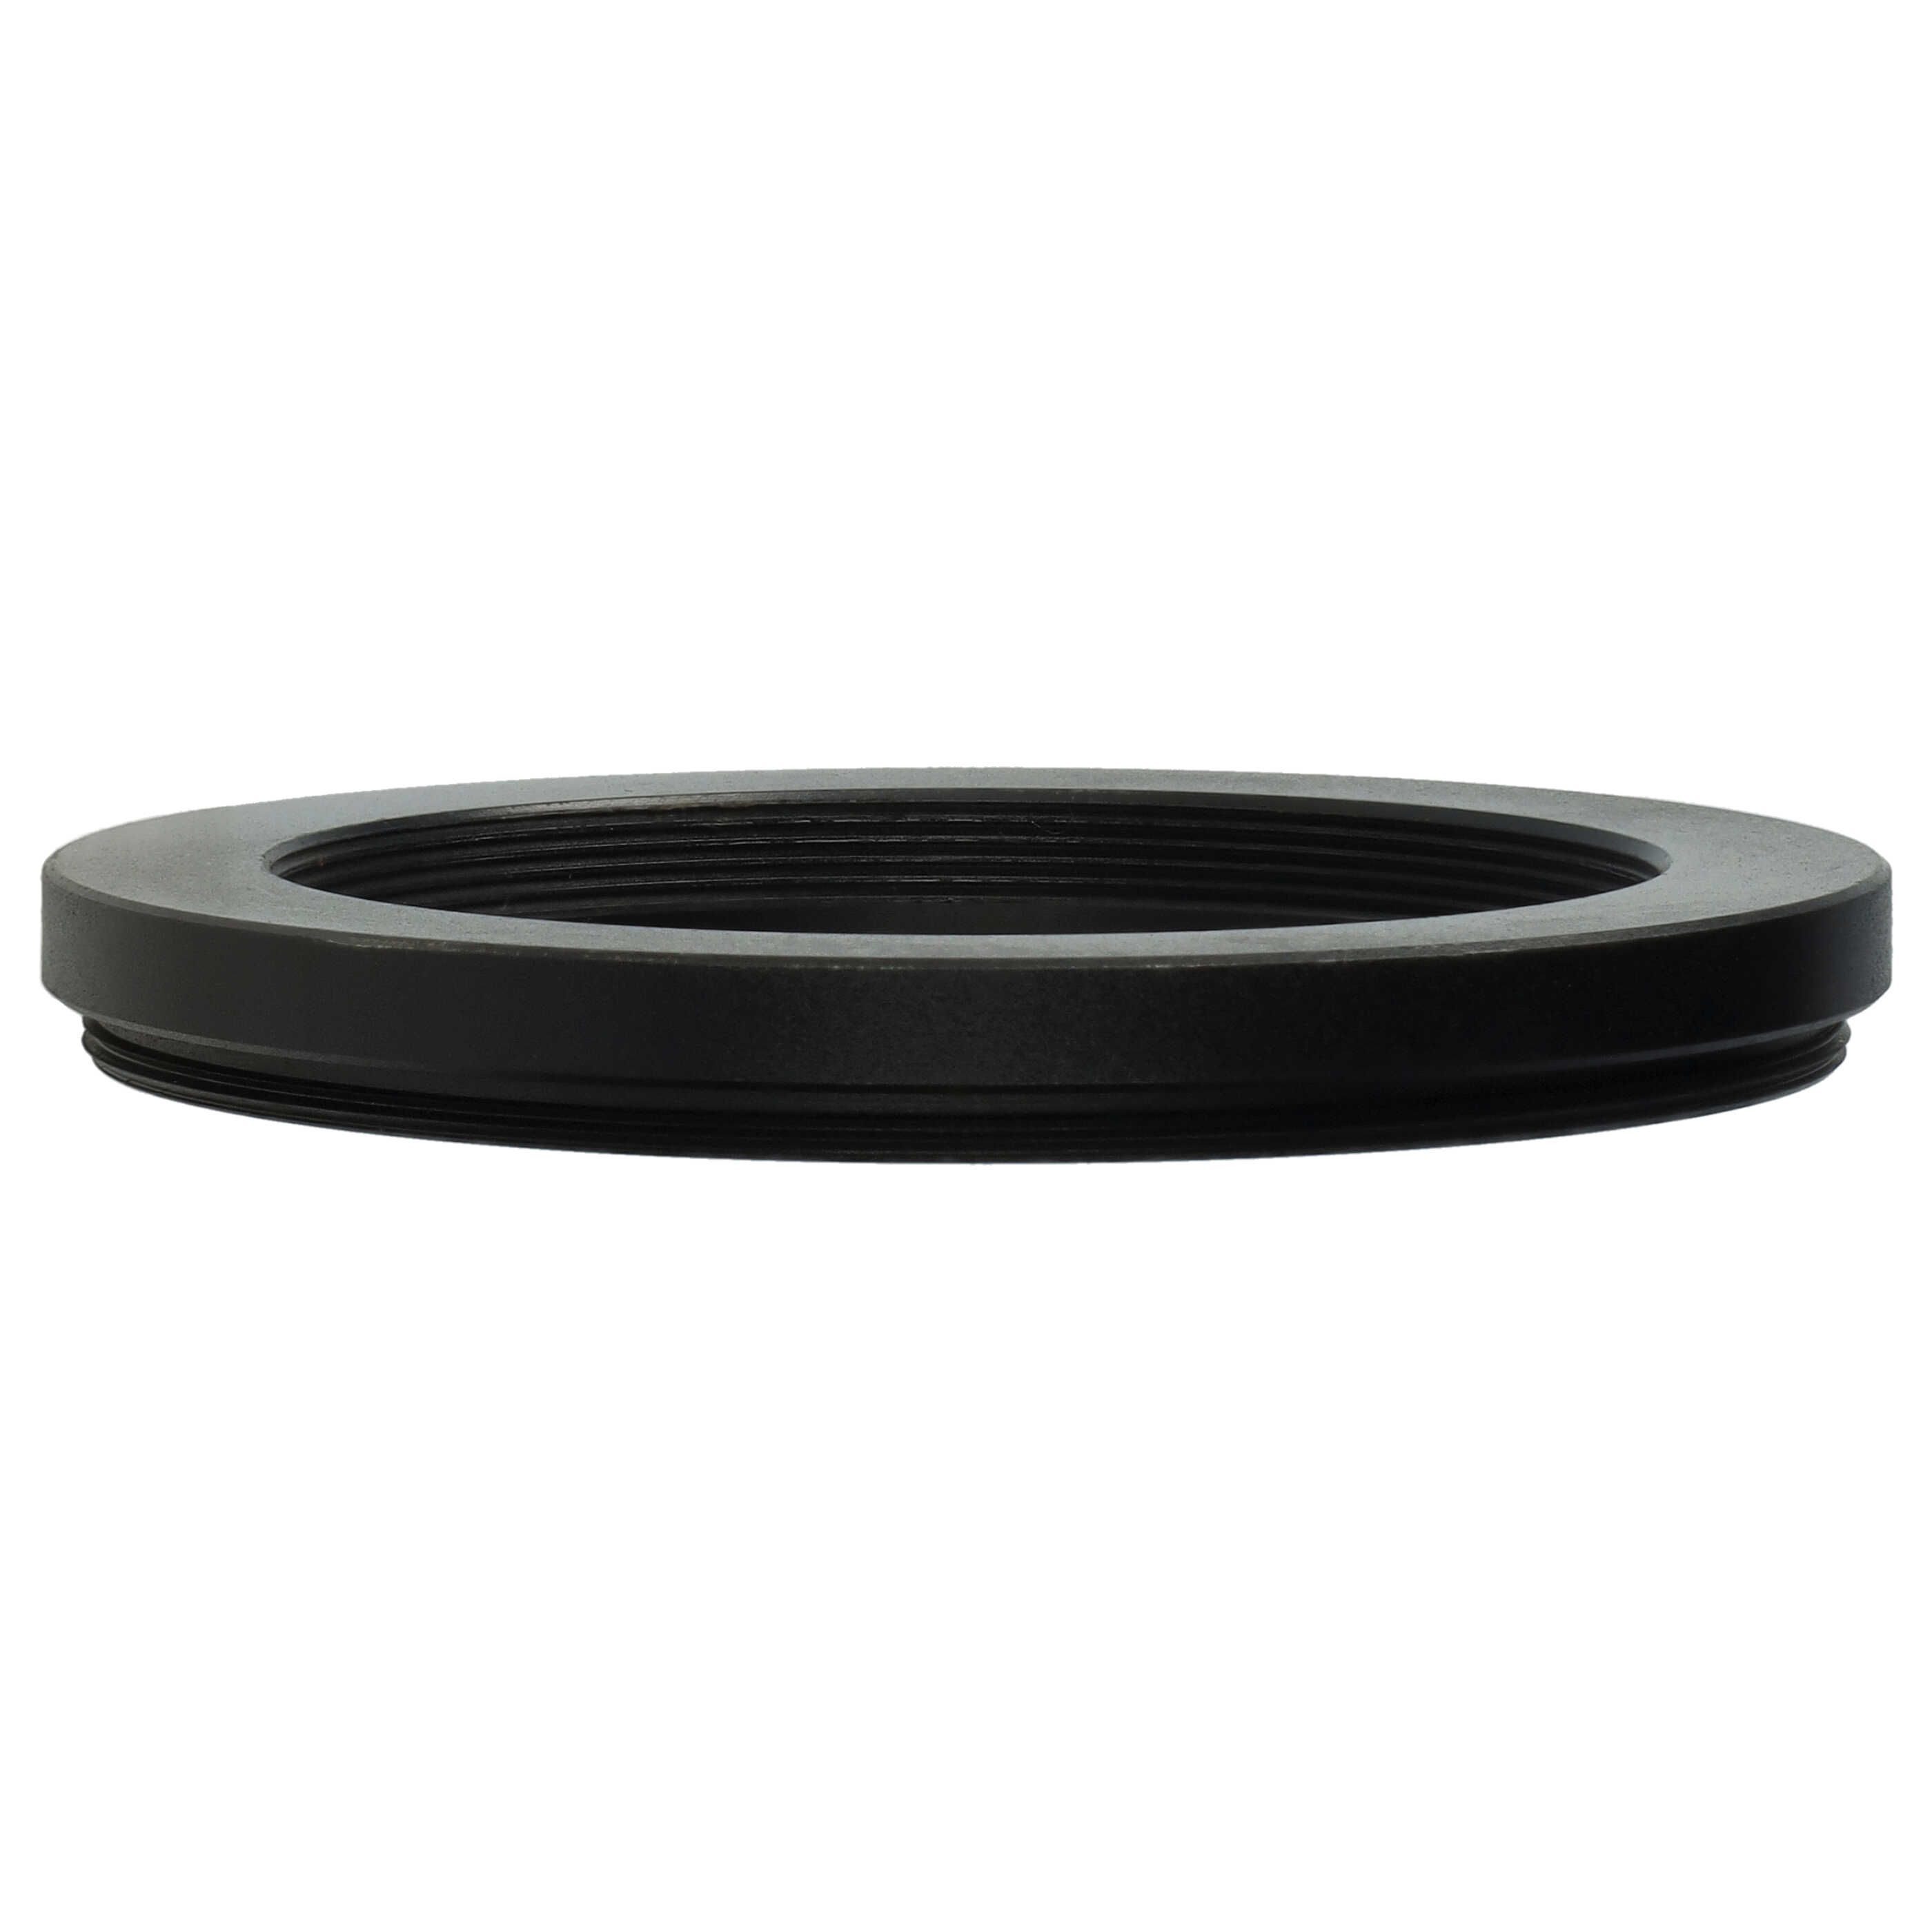 Redukcja filtrowa adapter Step-Down 62 mm - 49 mm pasująca do obiektywu - metal, czarny